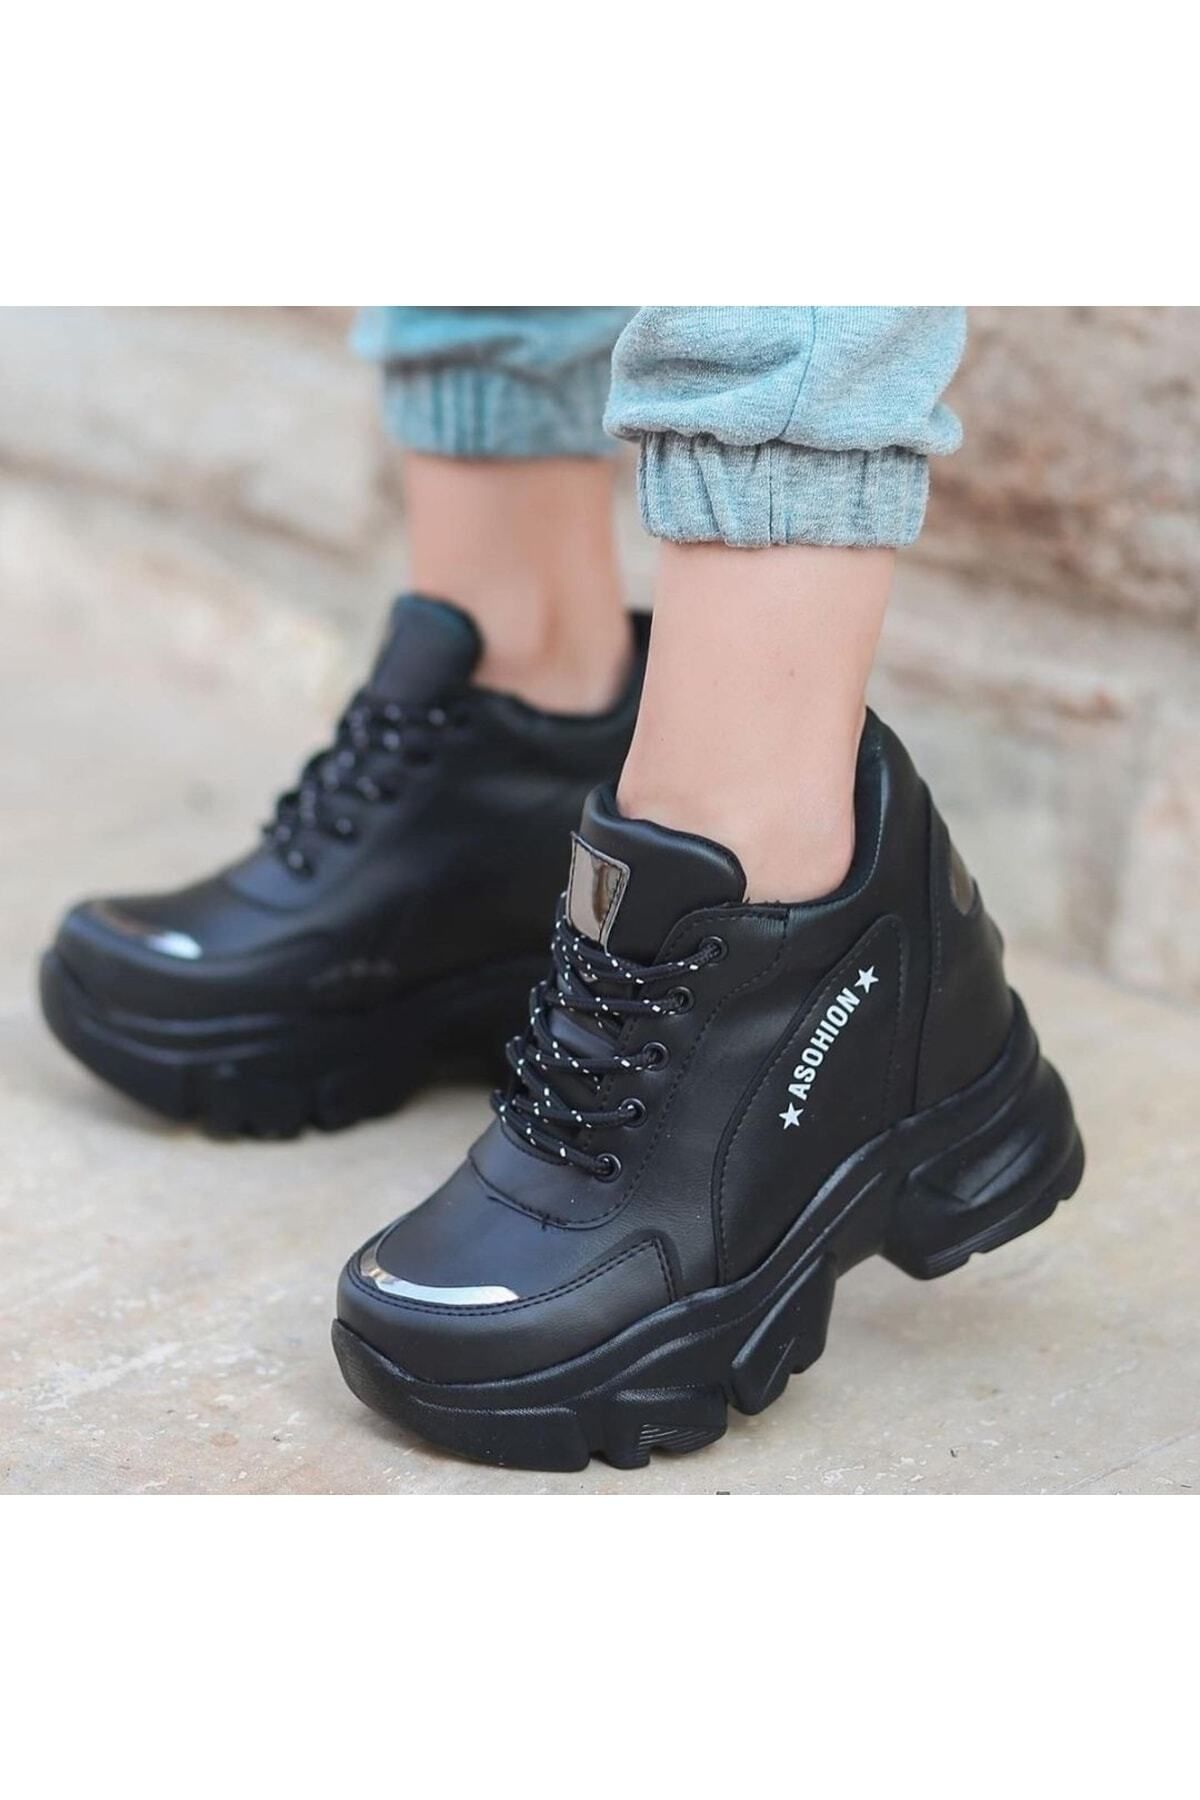 Afilli Kadın Siyah Gizli Yüksek Taban Dolgu Platform Topuk Günlük Gümüş Parlak Sneaker Spor Ayakkabı